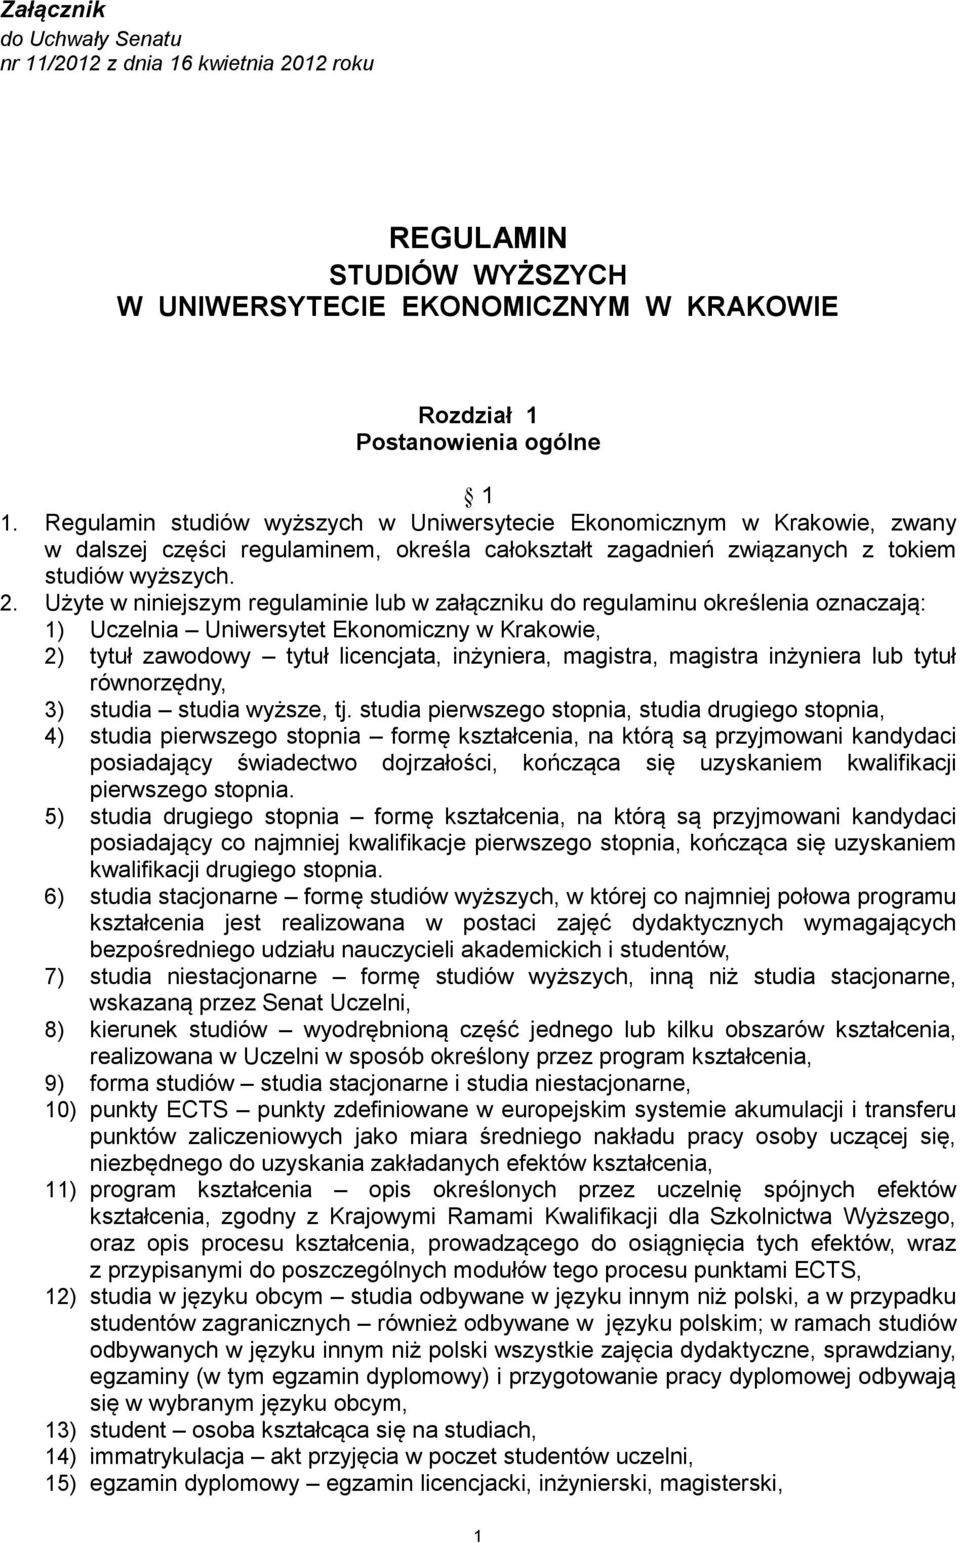 Użyte w niniejszym regulaminie lub w załączniku do regulaminu określenia oznaczają: 1) Uczelnia Uniwersytet Ekonomiczny w Krakowie, 2) tytuł zawodowy tytuł licencjata, inżyniera, magistra, magistra